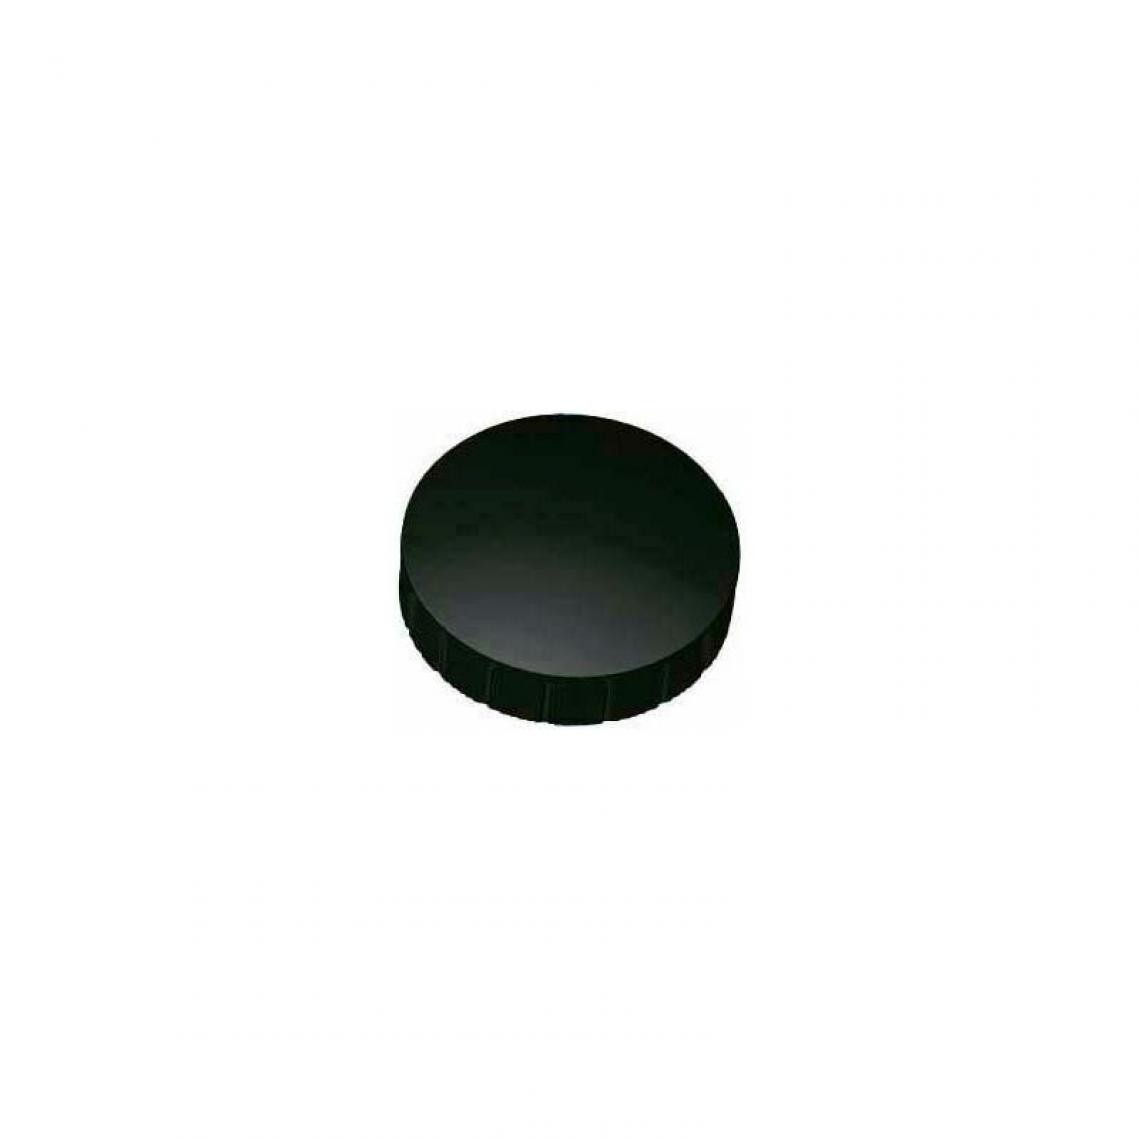 Maul - MAUL Aimant solide, capacité de charge: 0,8 kg, noir () - Visserie